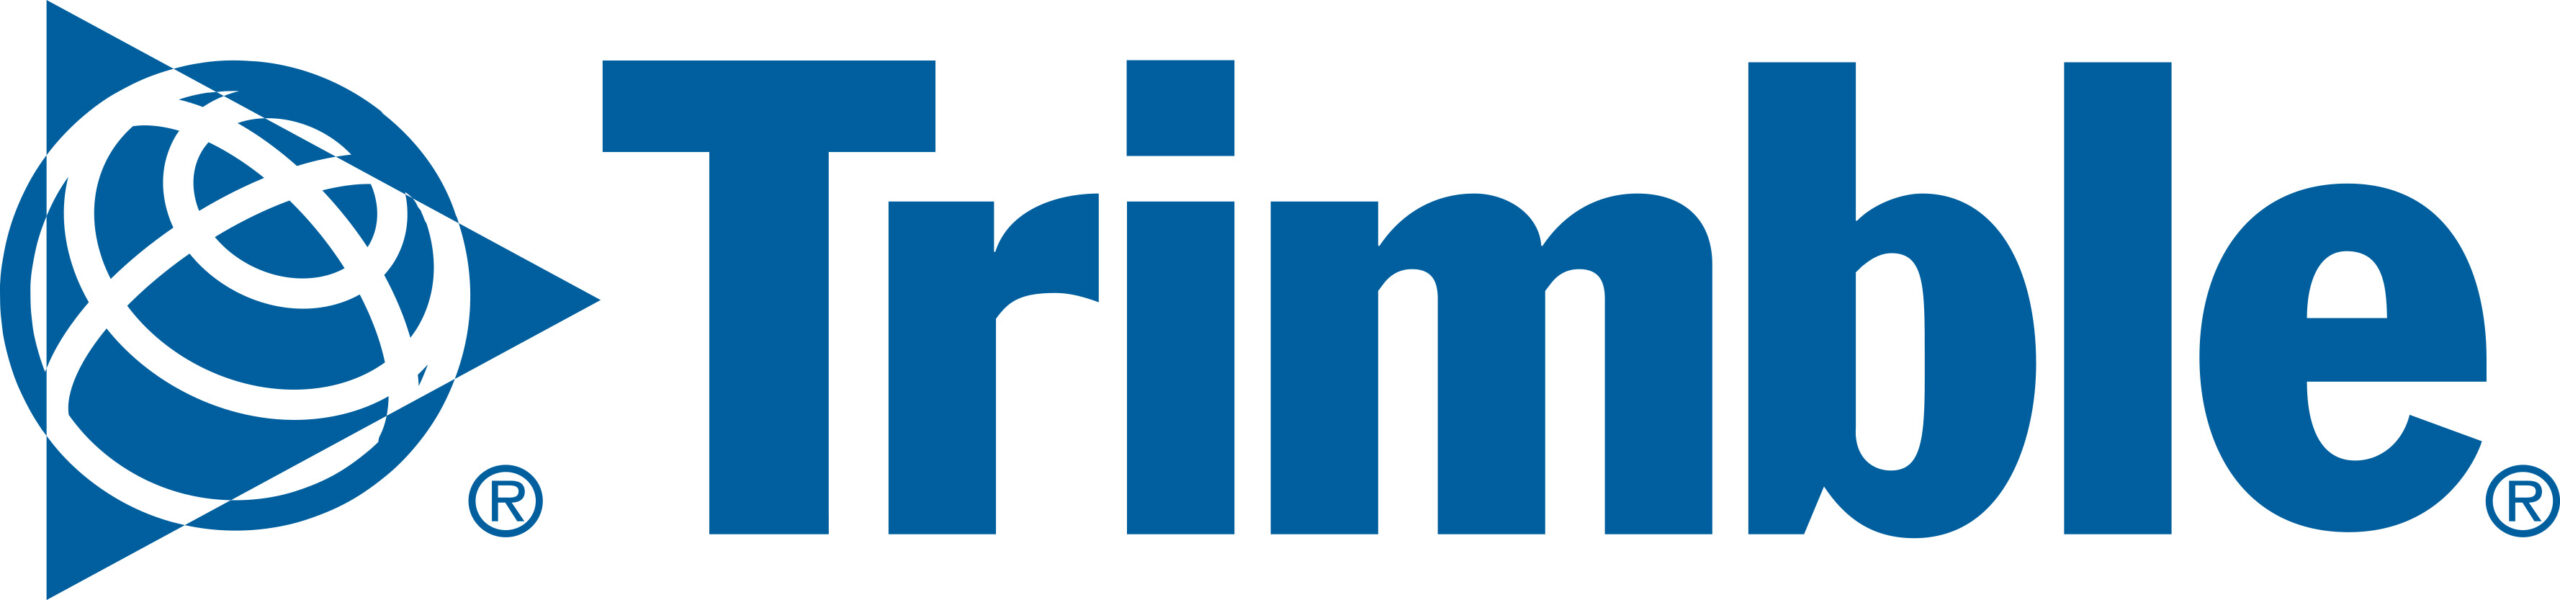 Trimble logo.